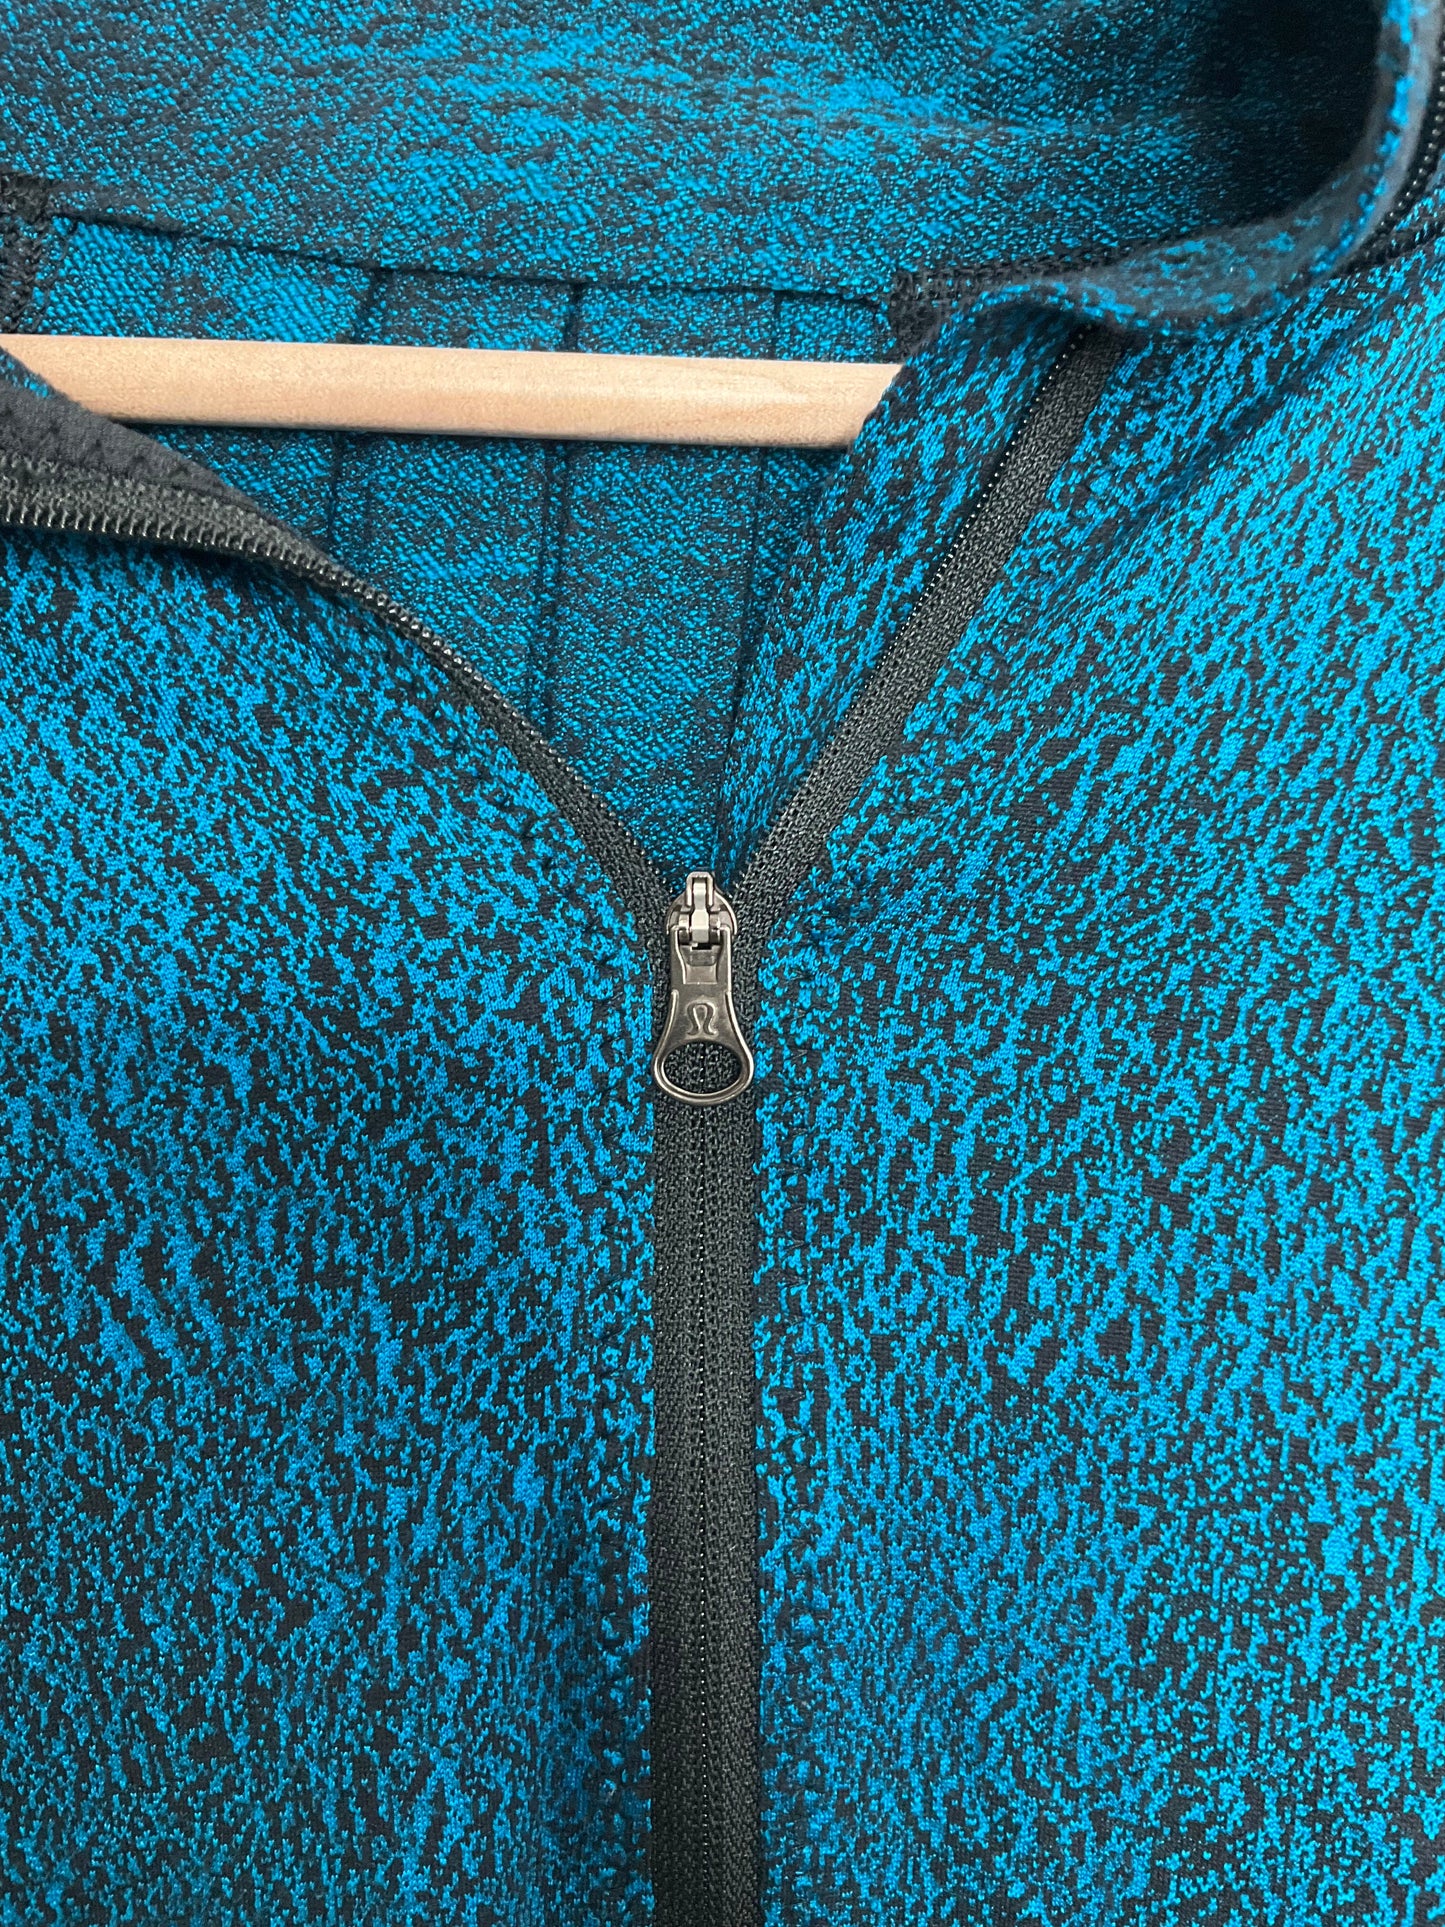 Black & Blue Athletic Jacket Lululemon, Size 10